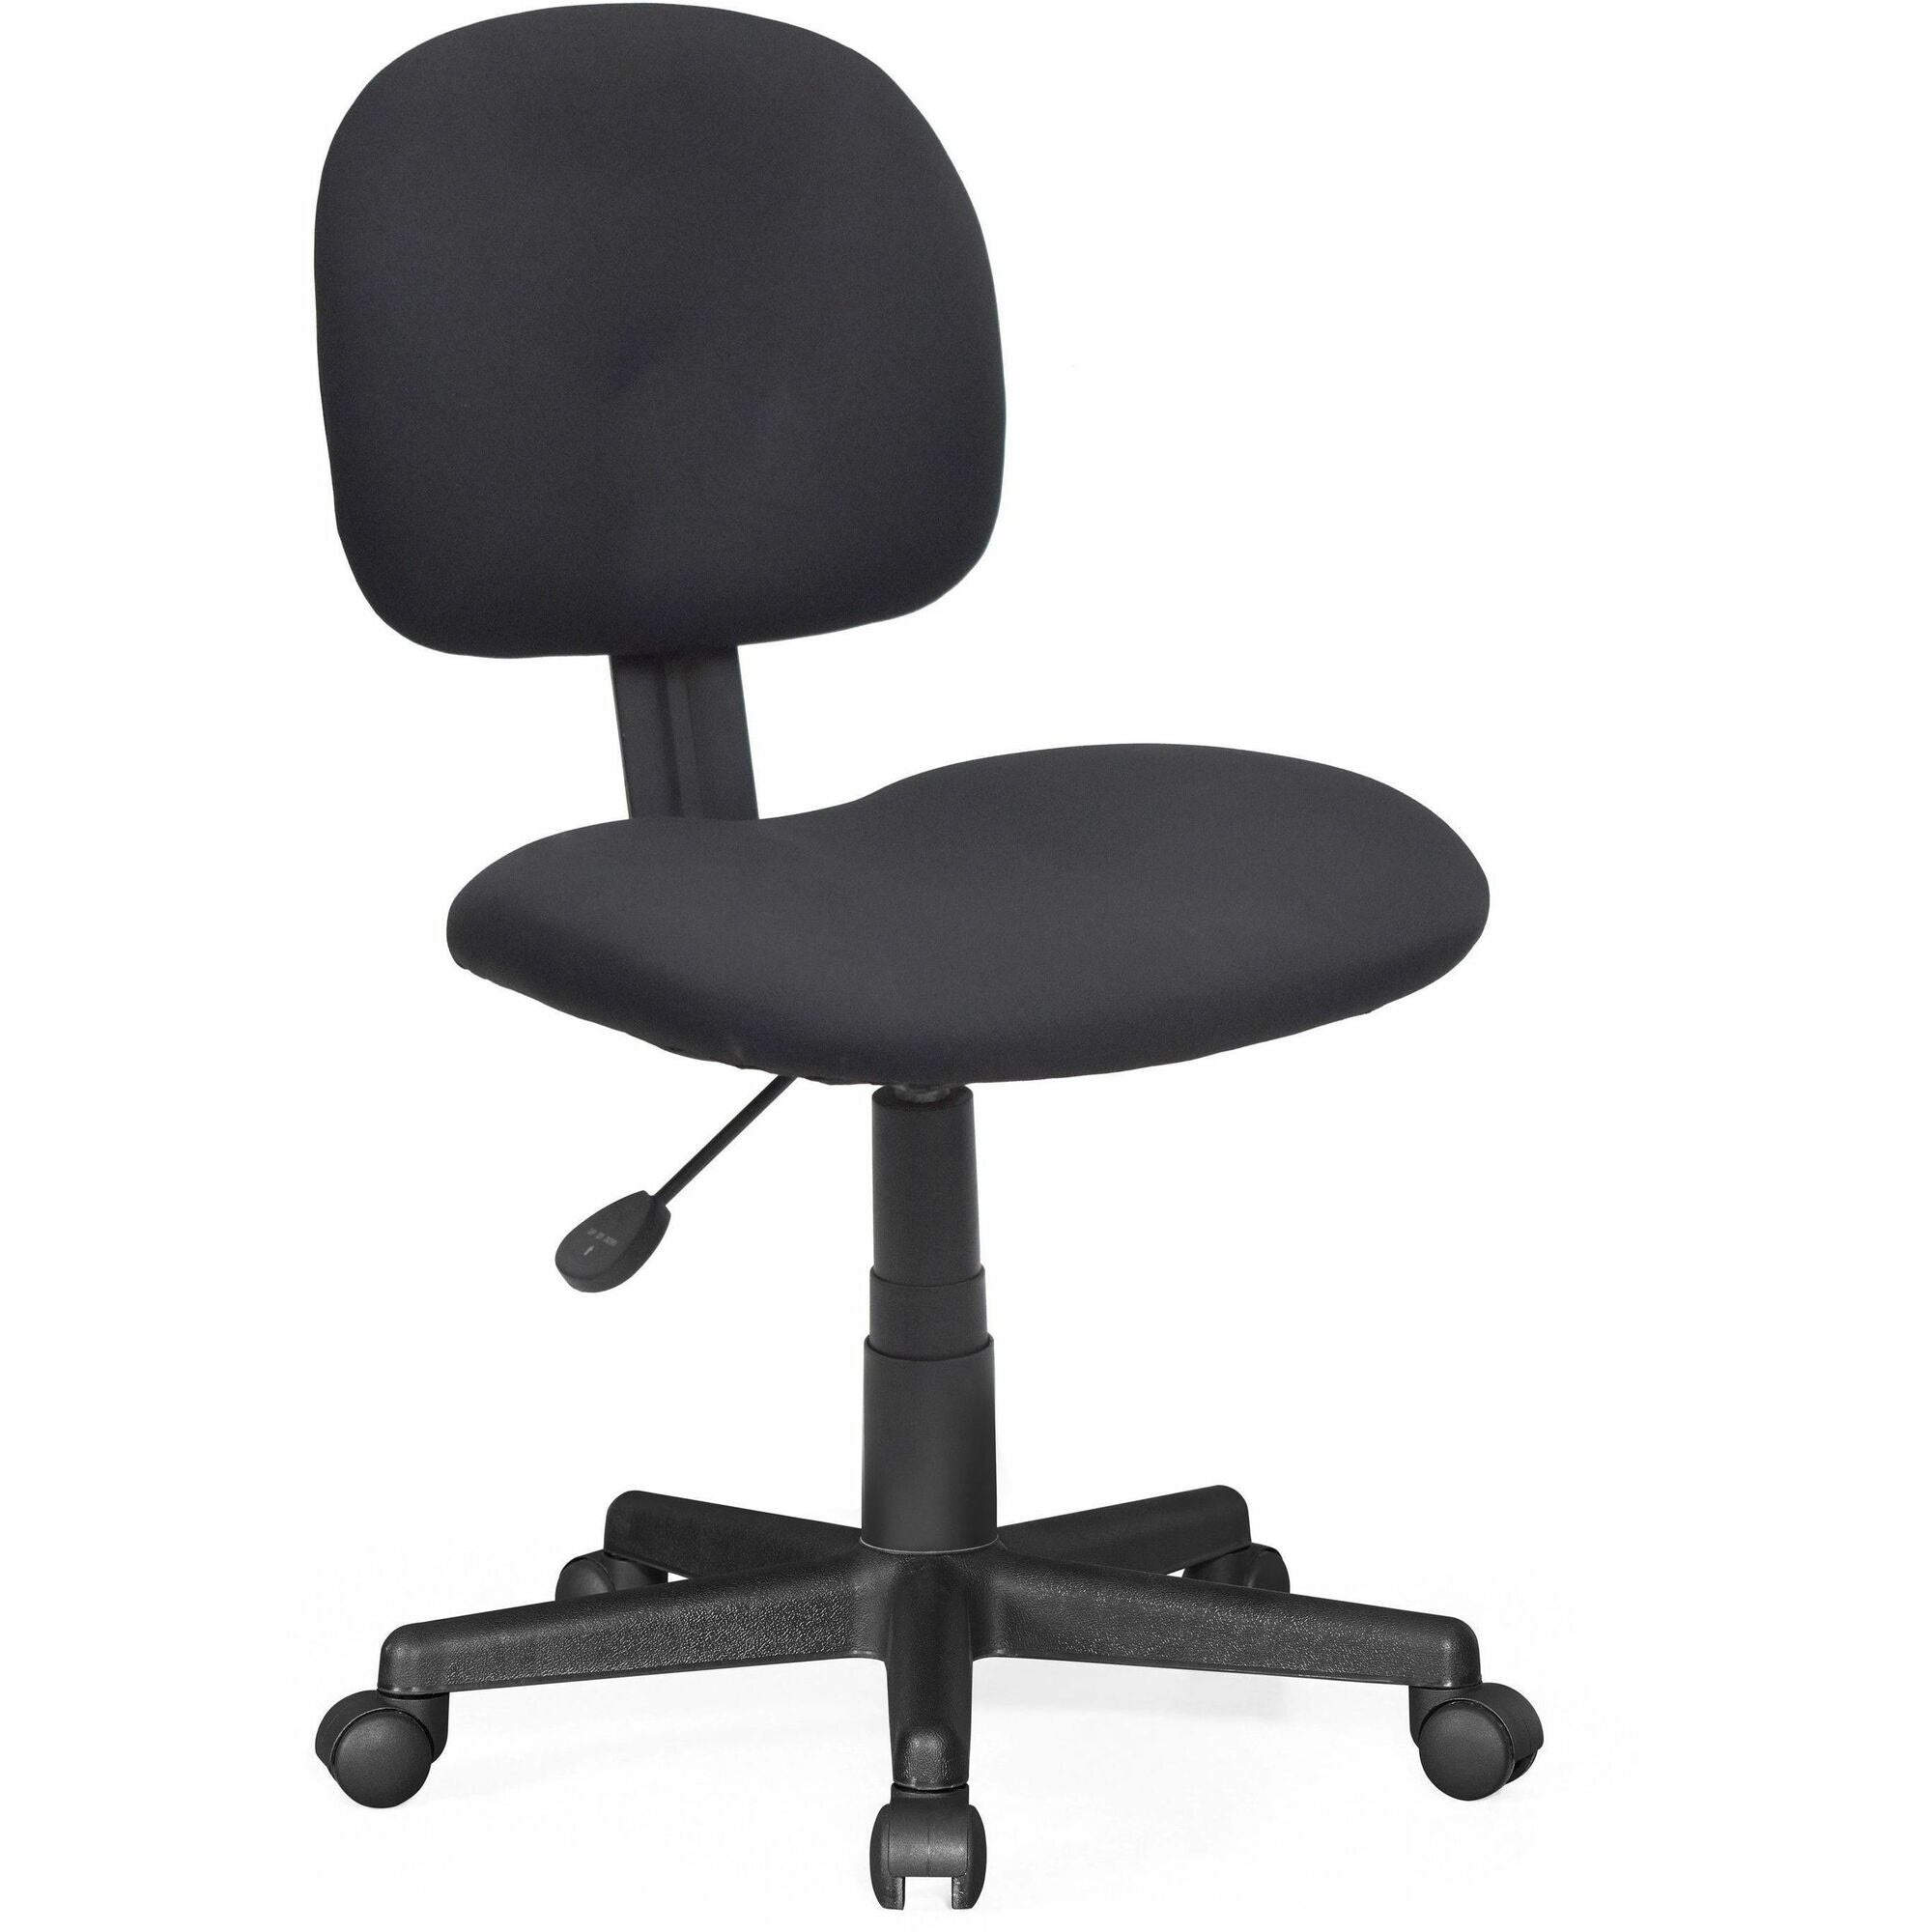 nusparc-multi-task-chair-fabric-back-5-star-base-black-1-each_nprch300fnbk - 1